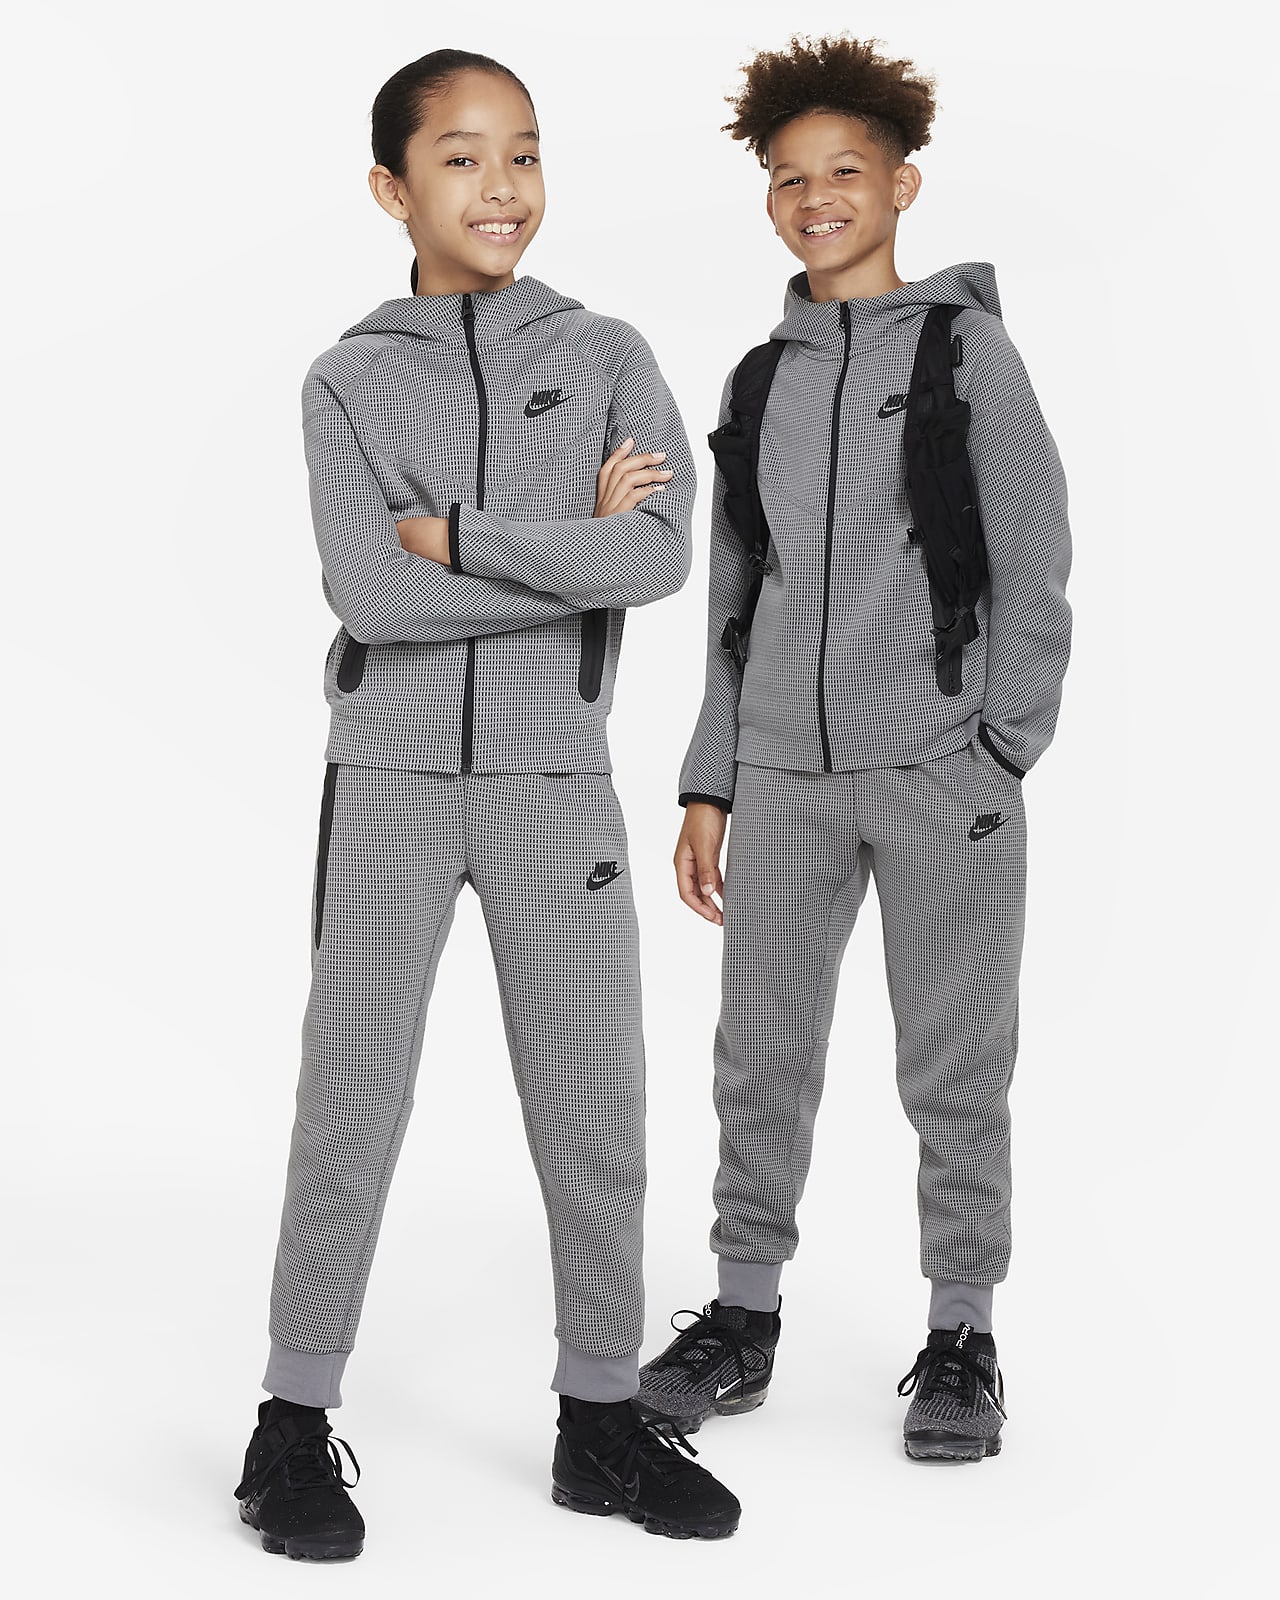 Nike Sportswear Tech Fleece Older Kids' (Boys') Trousers